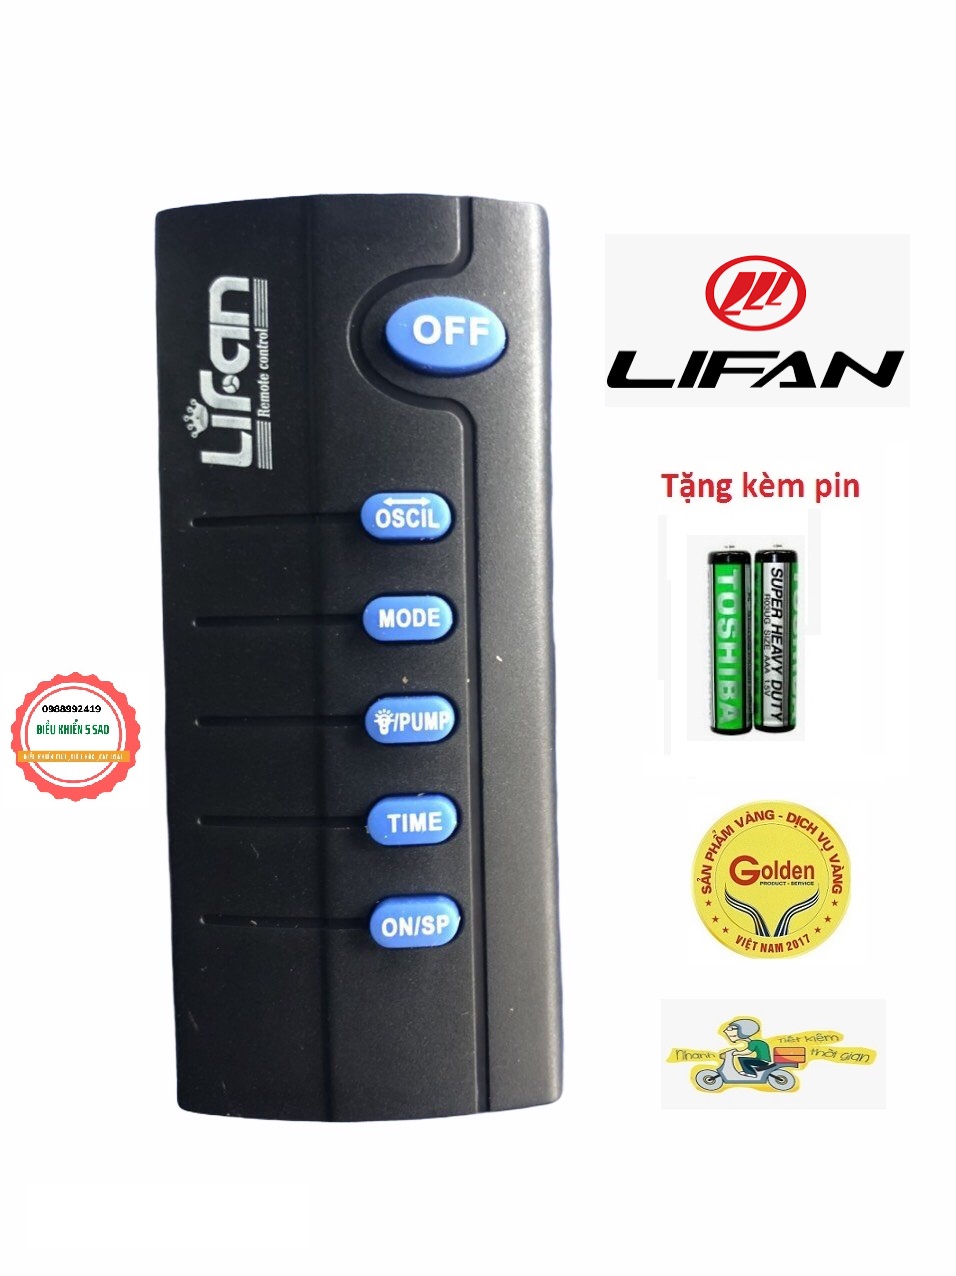 Điều khiển quạt LIFAN chính hãng màu đen (Cam kết sản phẩm là sản phẩm chính hãng )- Tặng kèm pin chính hãng - Remote LIFAN- Remote quạt LIFAN chính hãng loại xịn chính hãng